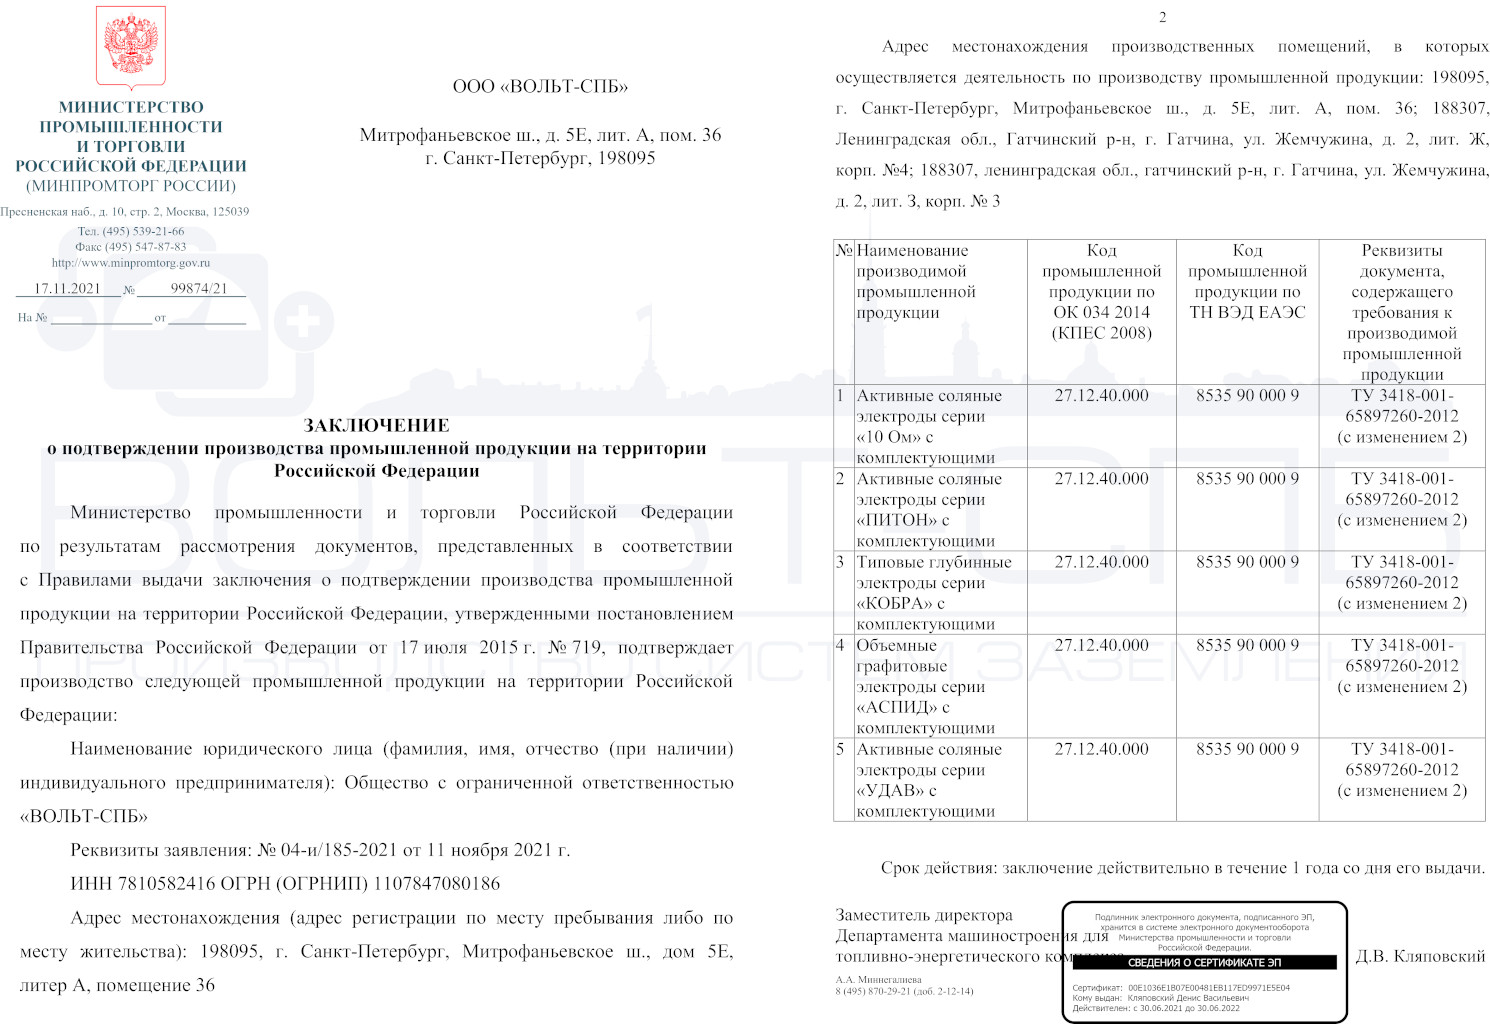 Заключение МИНПРОМТОРГа о подтверждении производства промышленной продукции на территории Российской Федерации